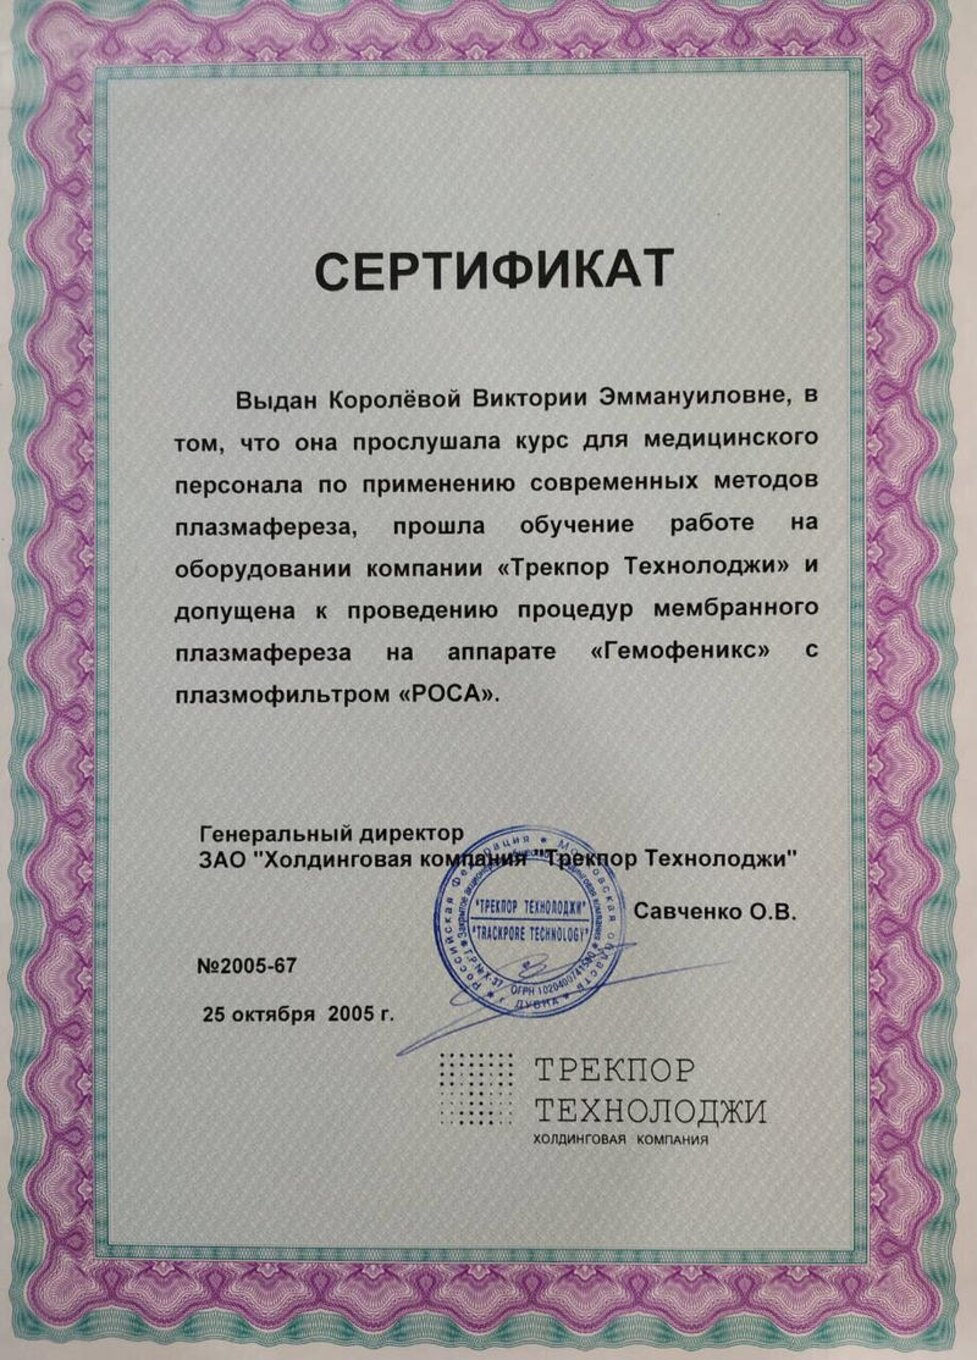 certificates/korolova-viktoriya-emanuyilivna/hemomedika-cert-koroleva-11.jpg